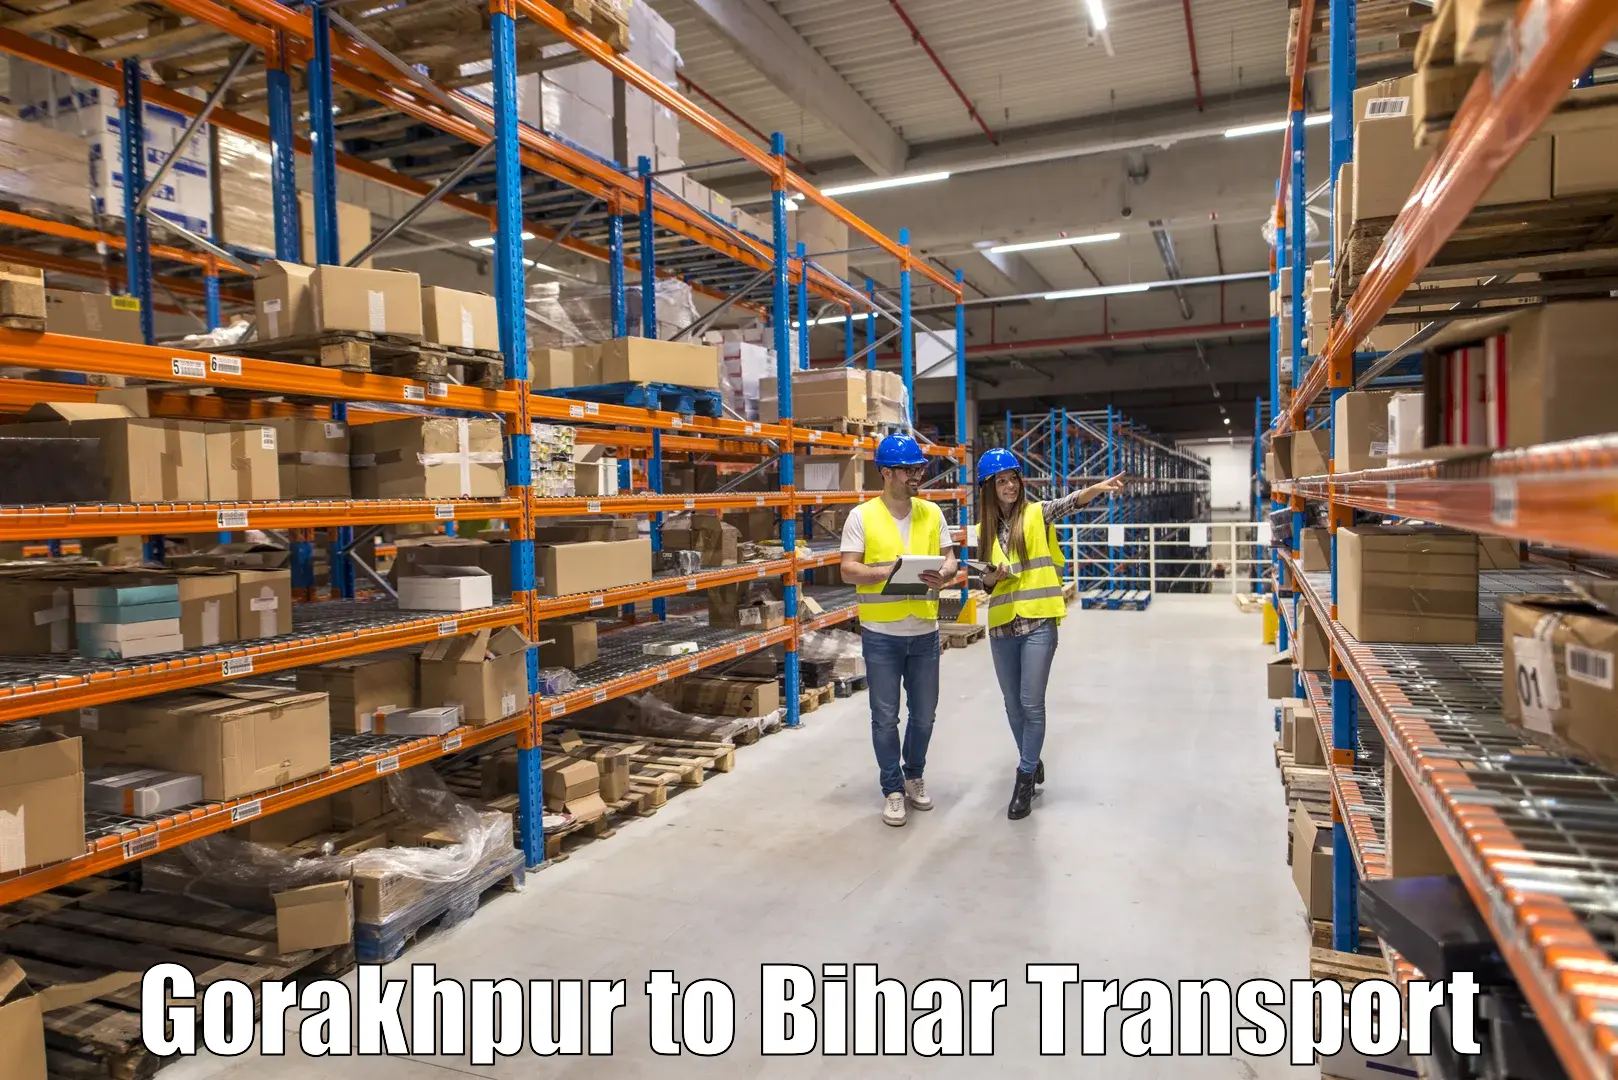 Goods delivery service Gorakhpur to Bhorey